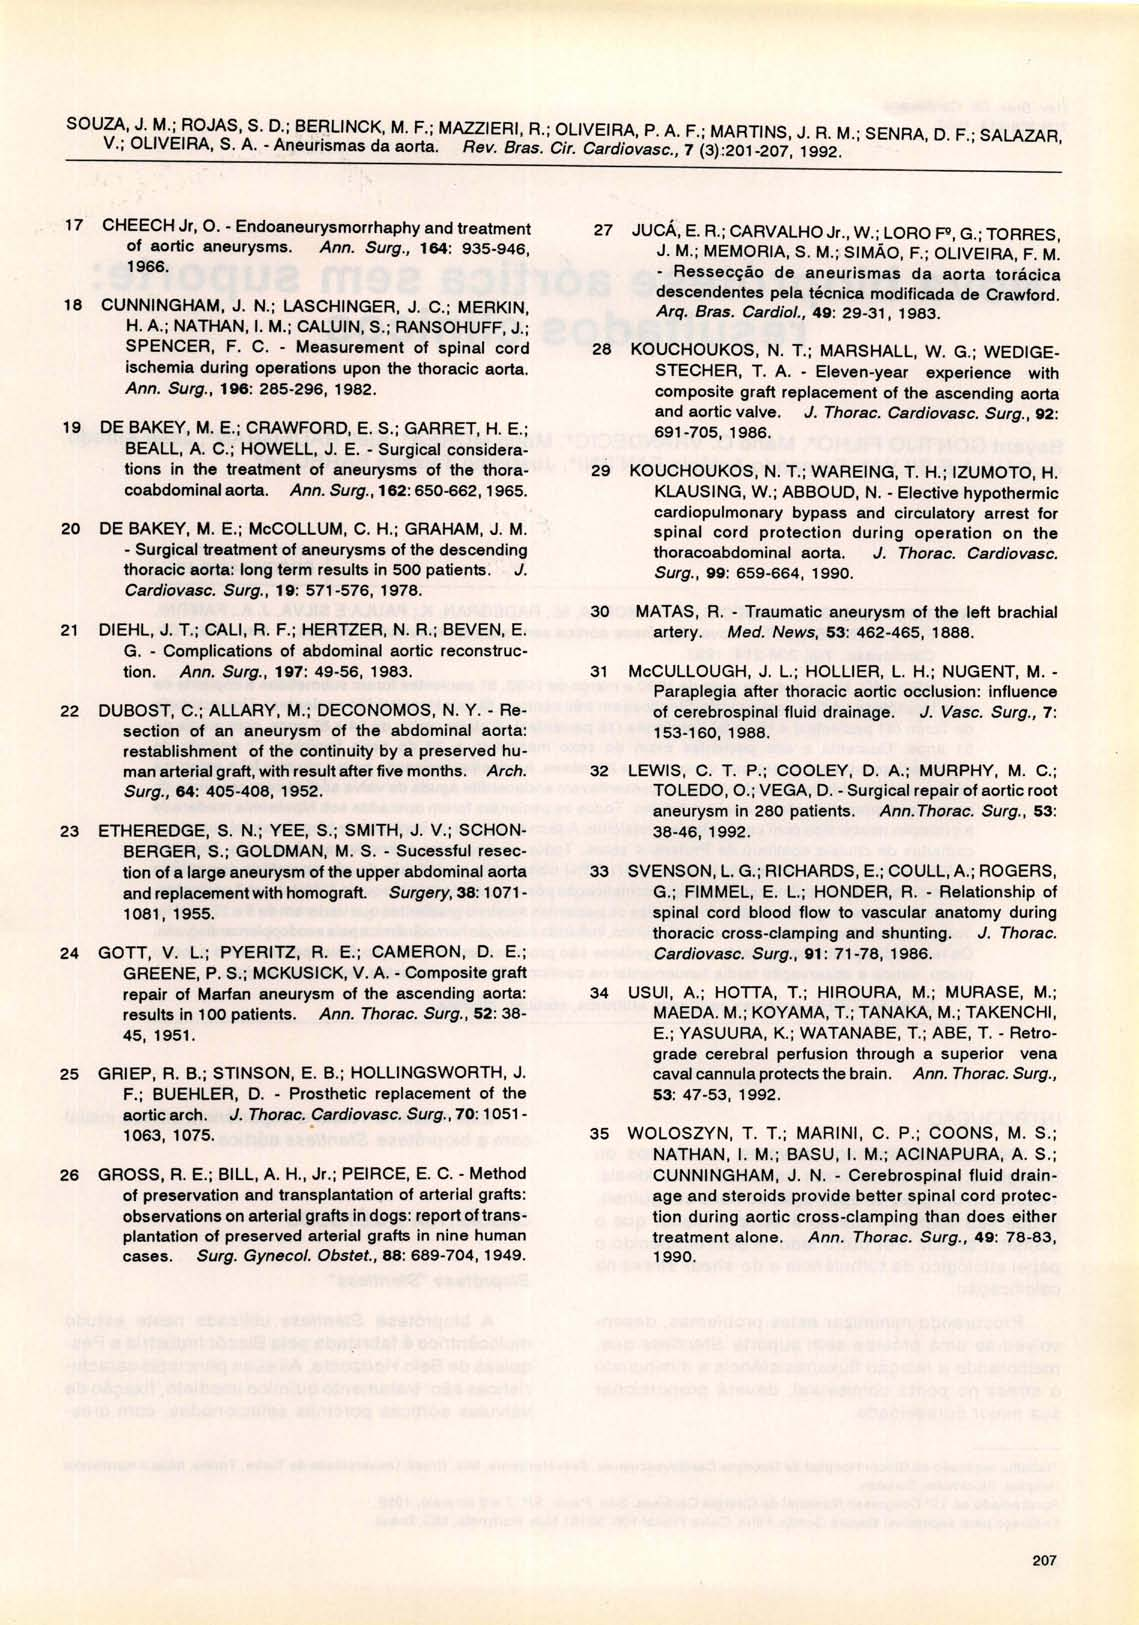 SOUZA, J. M.; ROJAS, S. D.; BE~L1NCK, M. F.; MAZZIERI, R.; OLIVEIRA, P. A. F.; MARTINS, J. R. M.; SENRA, D. F.; SALAZAR, V. ; OLIVEIRA, S. A. - Aneurismas da aorta. Rev. Bras. Cir. Cardiovasc., 7 ().